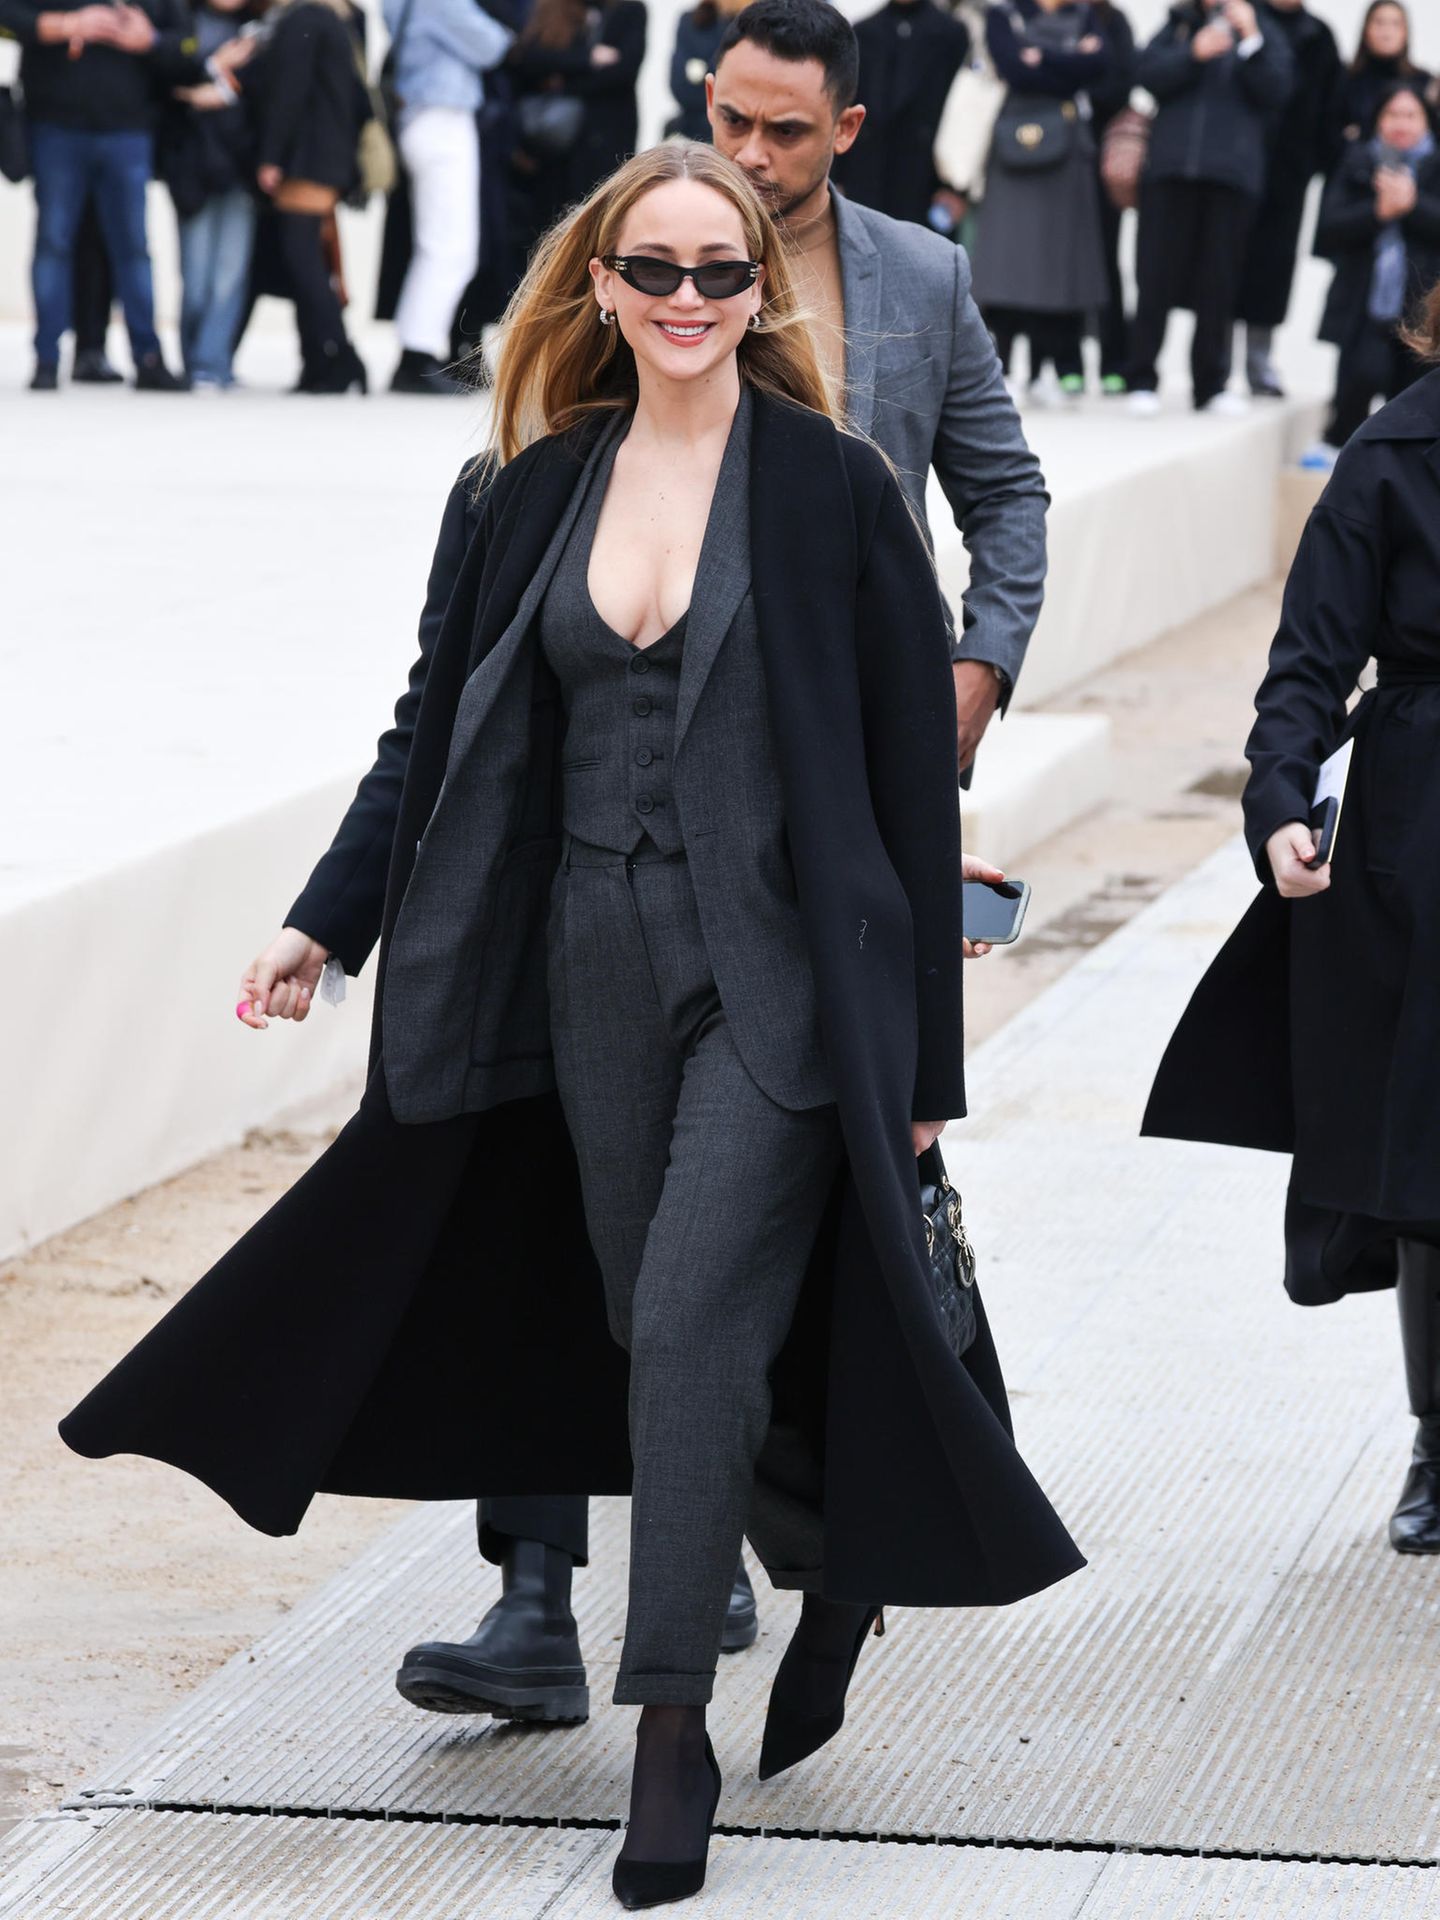 Und mit Dior-Testimonial Jennifer Lawrence folgt gleich der nächste Hollywood-Star.